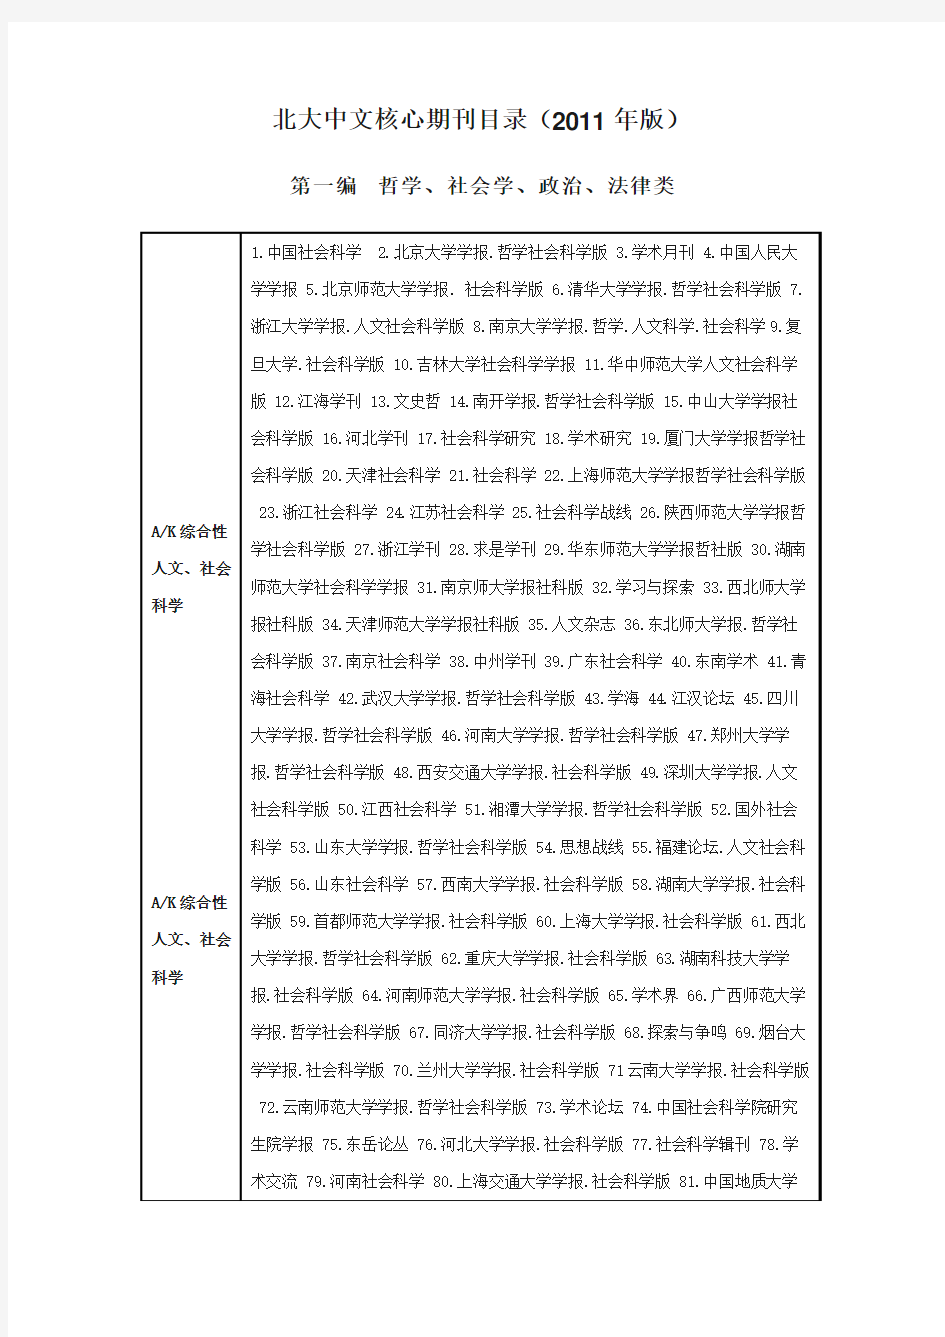 北大中文核心期刊目录(2011版)--2012年4月12日更新